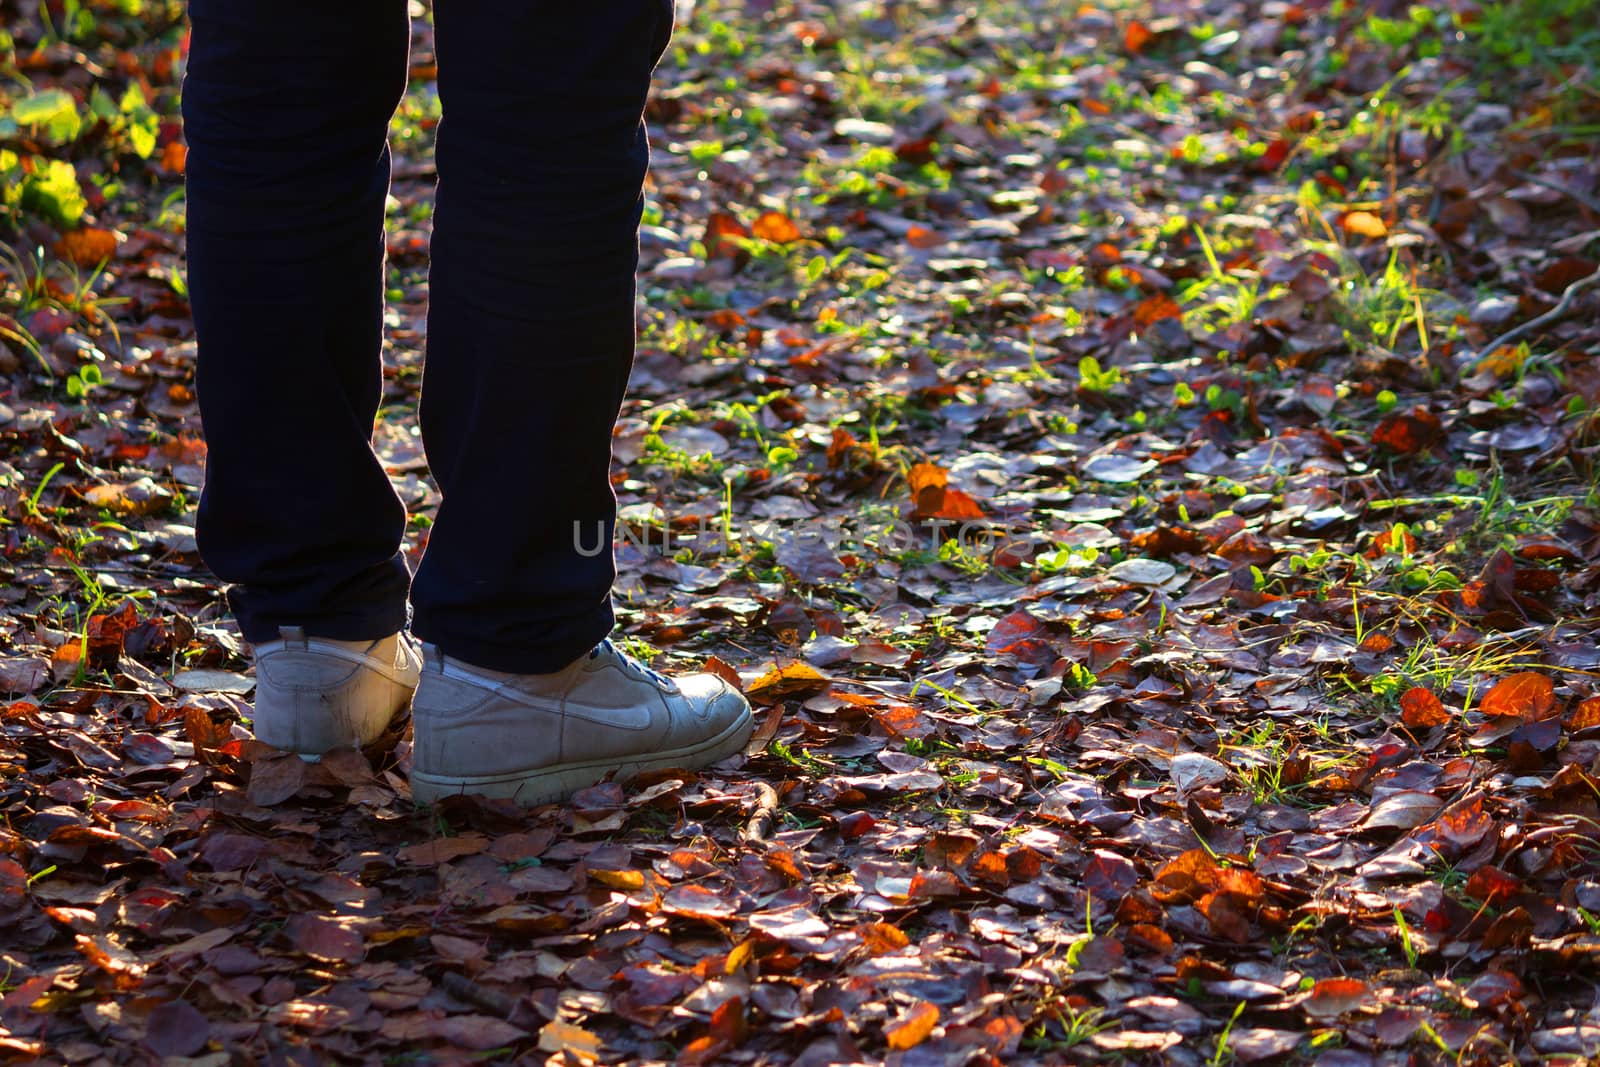 Feet sneakers walking on fall leaves by liwei12